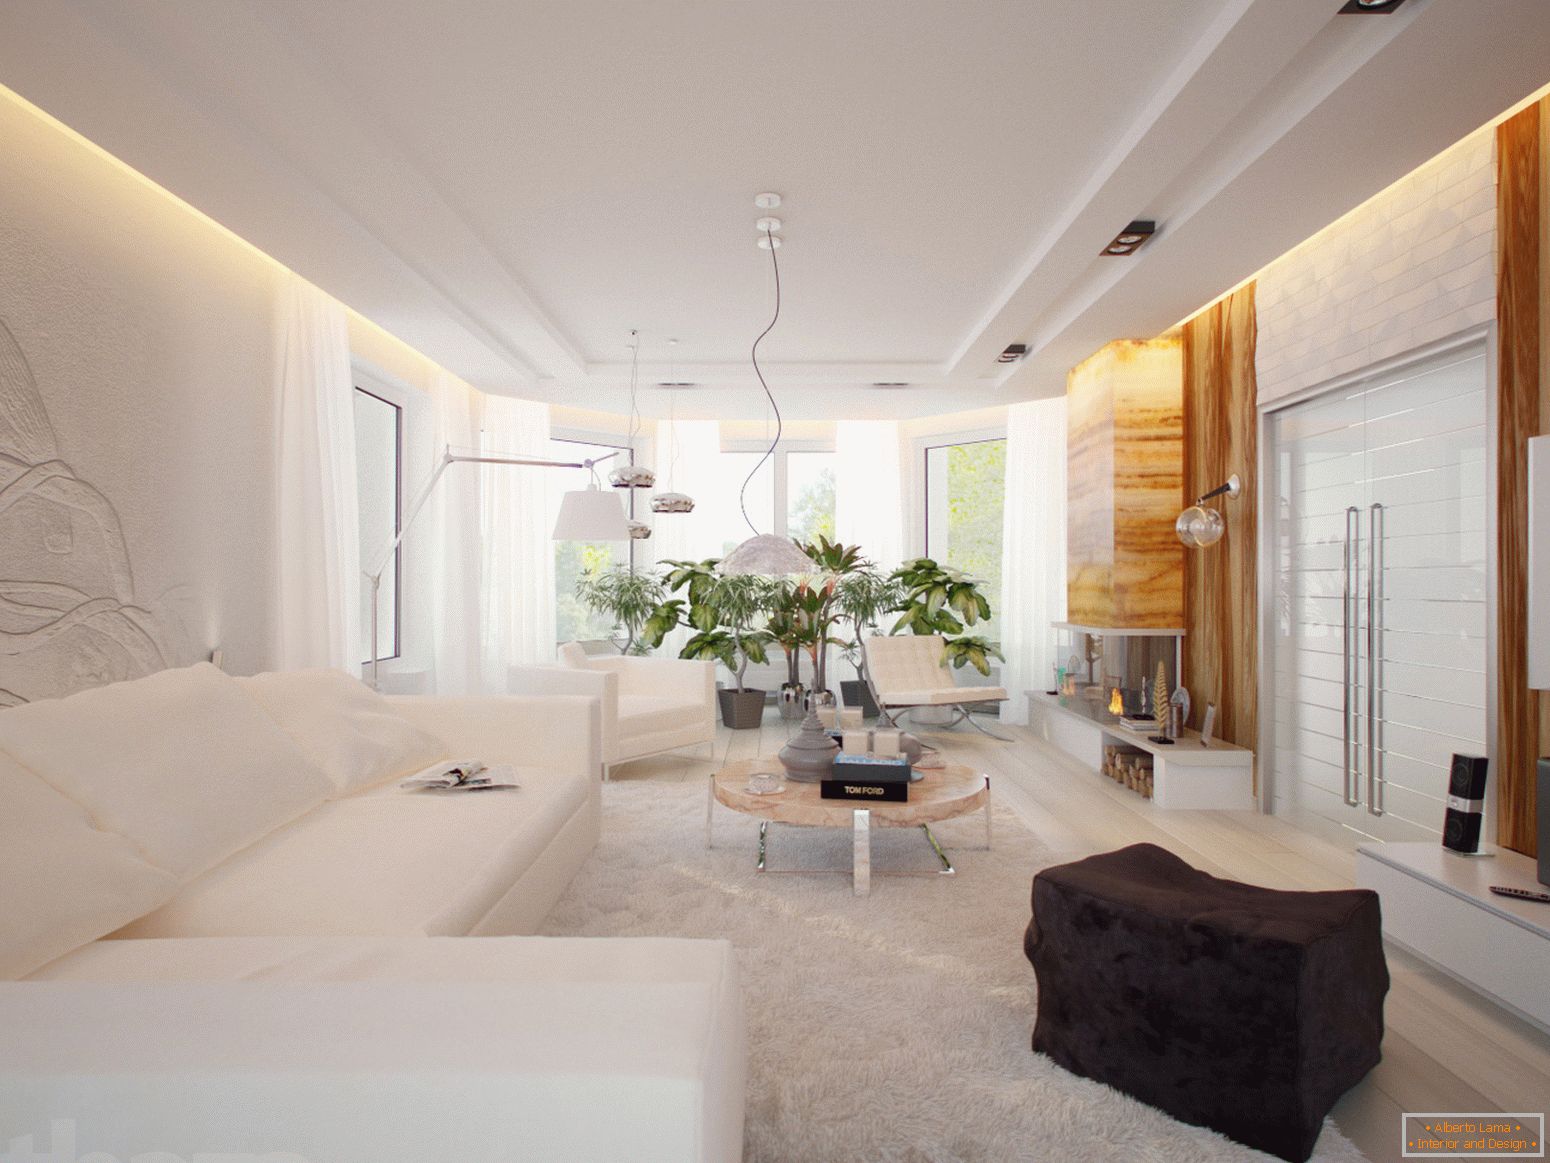 Prostorna in svetla soba za goste v minimalističnem stilu je odličen primer ustrezno izbranega pohištva.